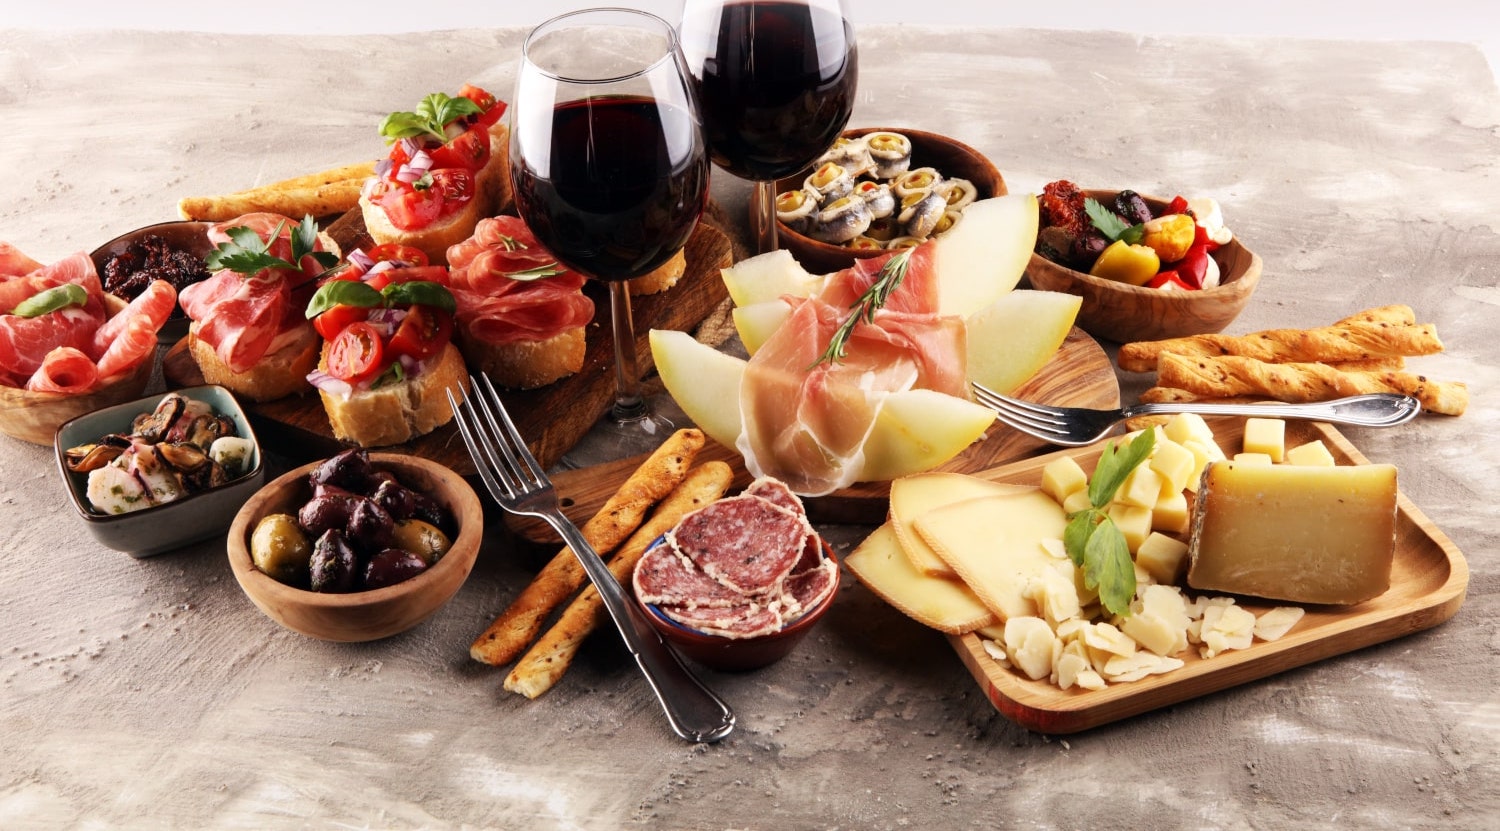 Antipasti Platte mit Bruschetta, Käse, Obst und Rotwein